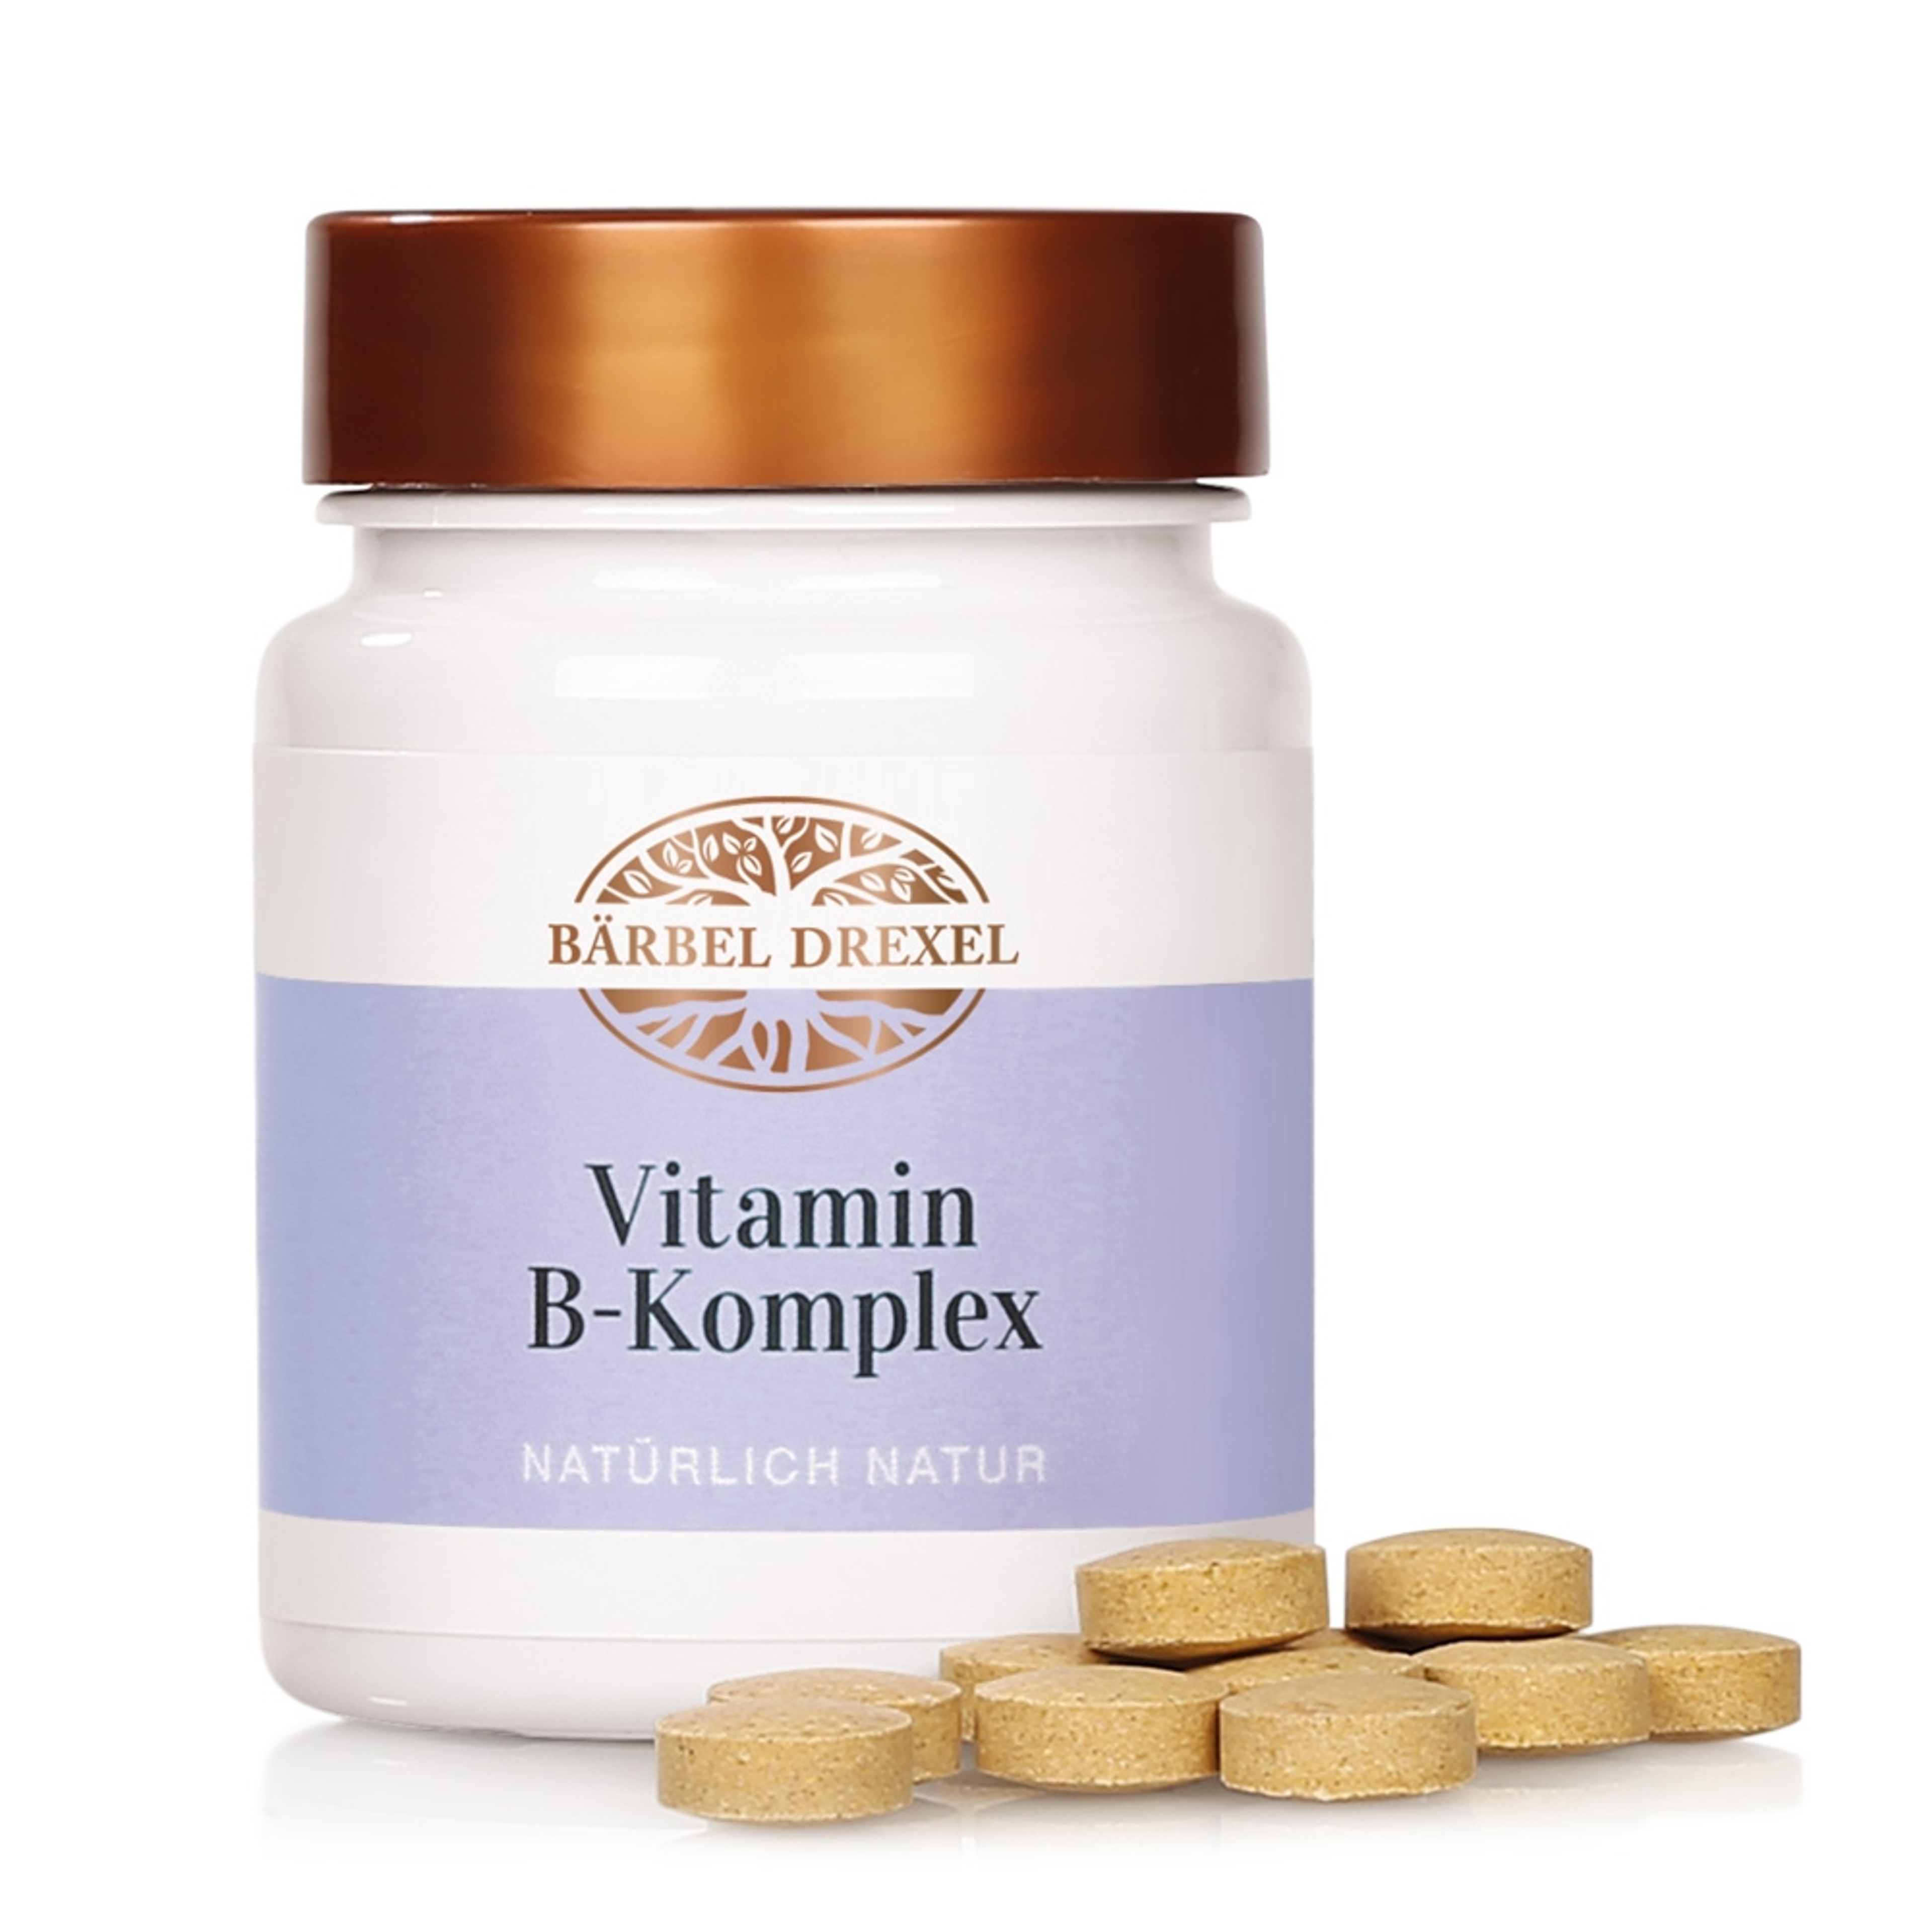 vitamin-b-komplex-72034-mit-presslingen_7_8.jpg